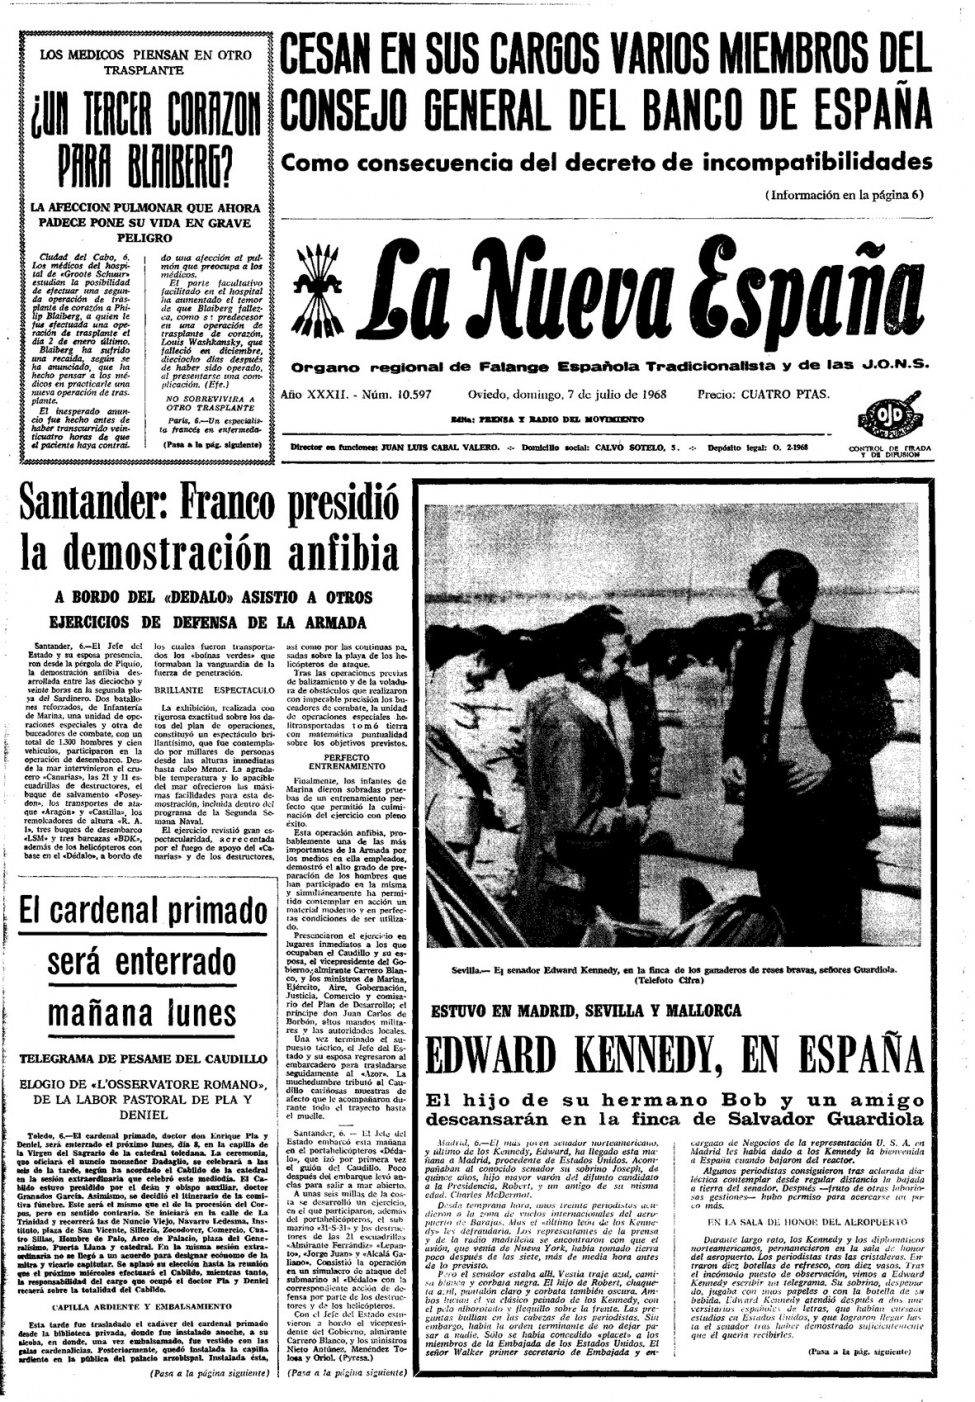 Portada del Domingo, 7 de Julio de 1968